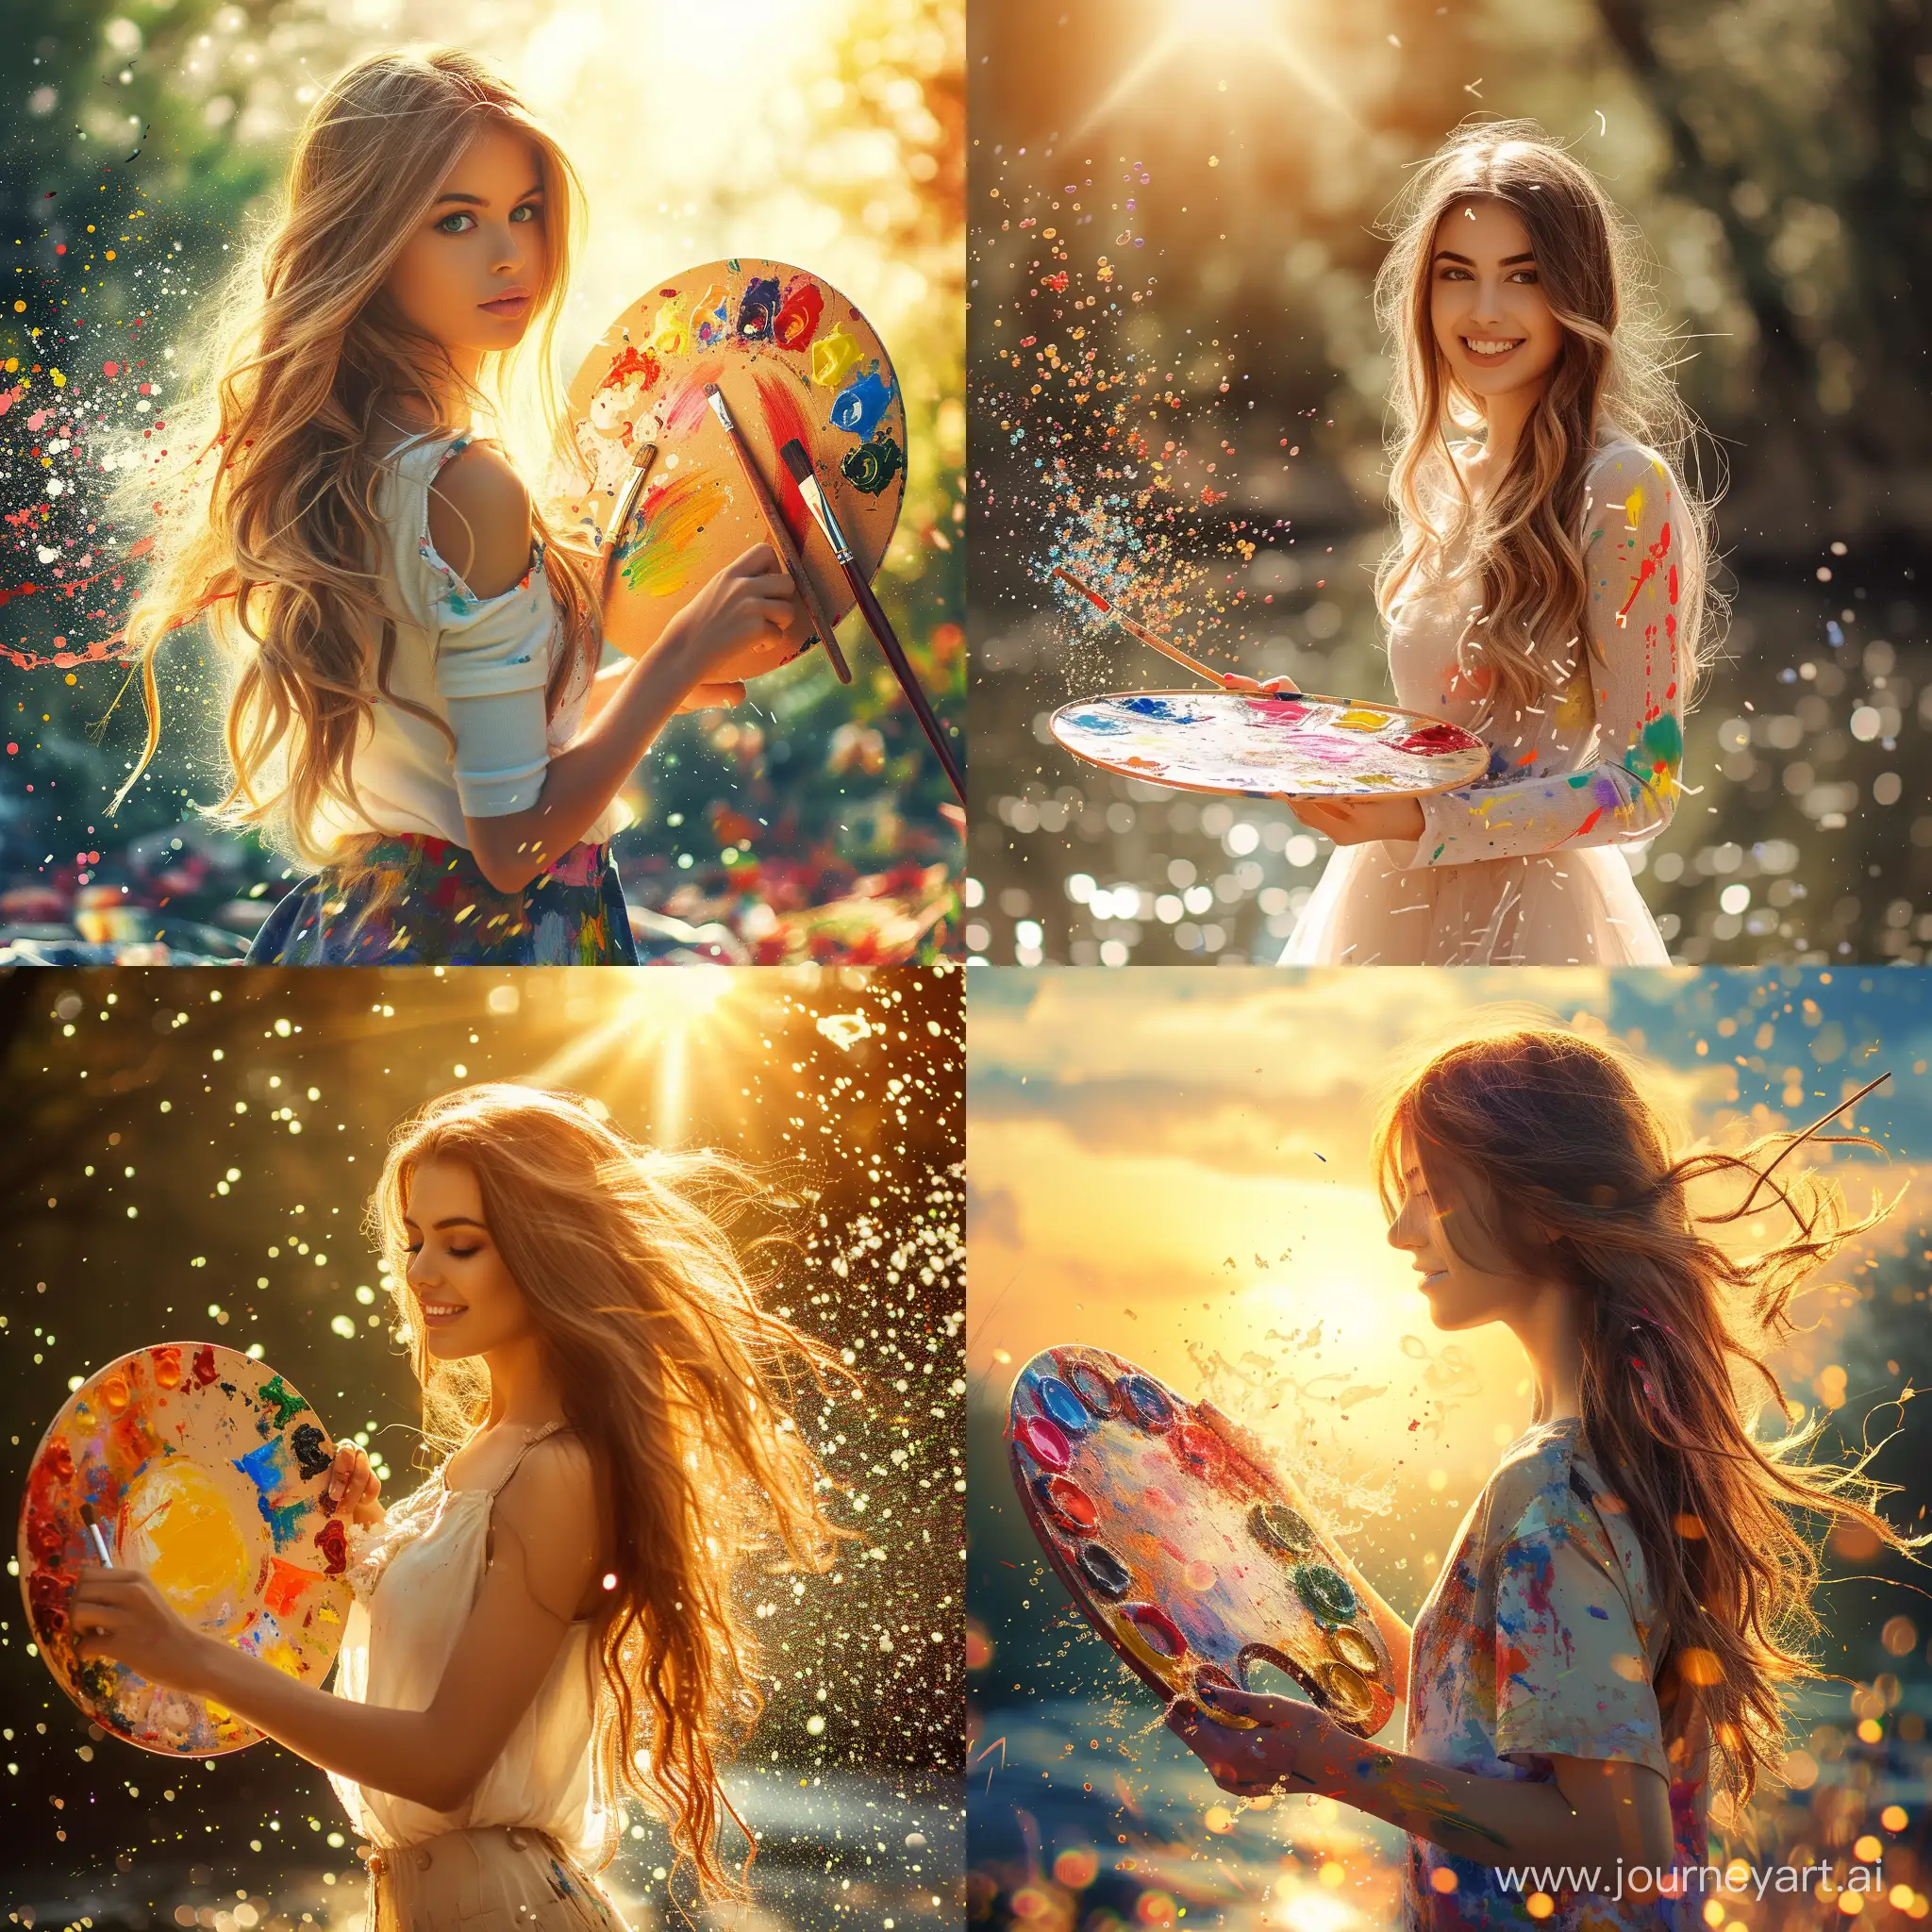 Vibrant-Palette-Beautiful-Girl-Splashing-Colors-in-Sunlight